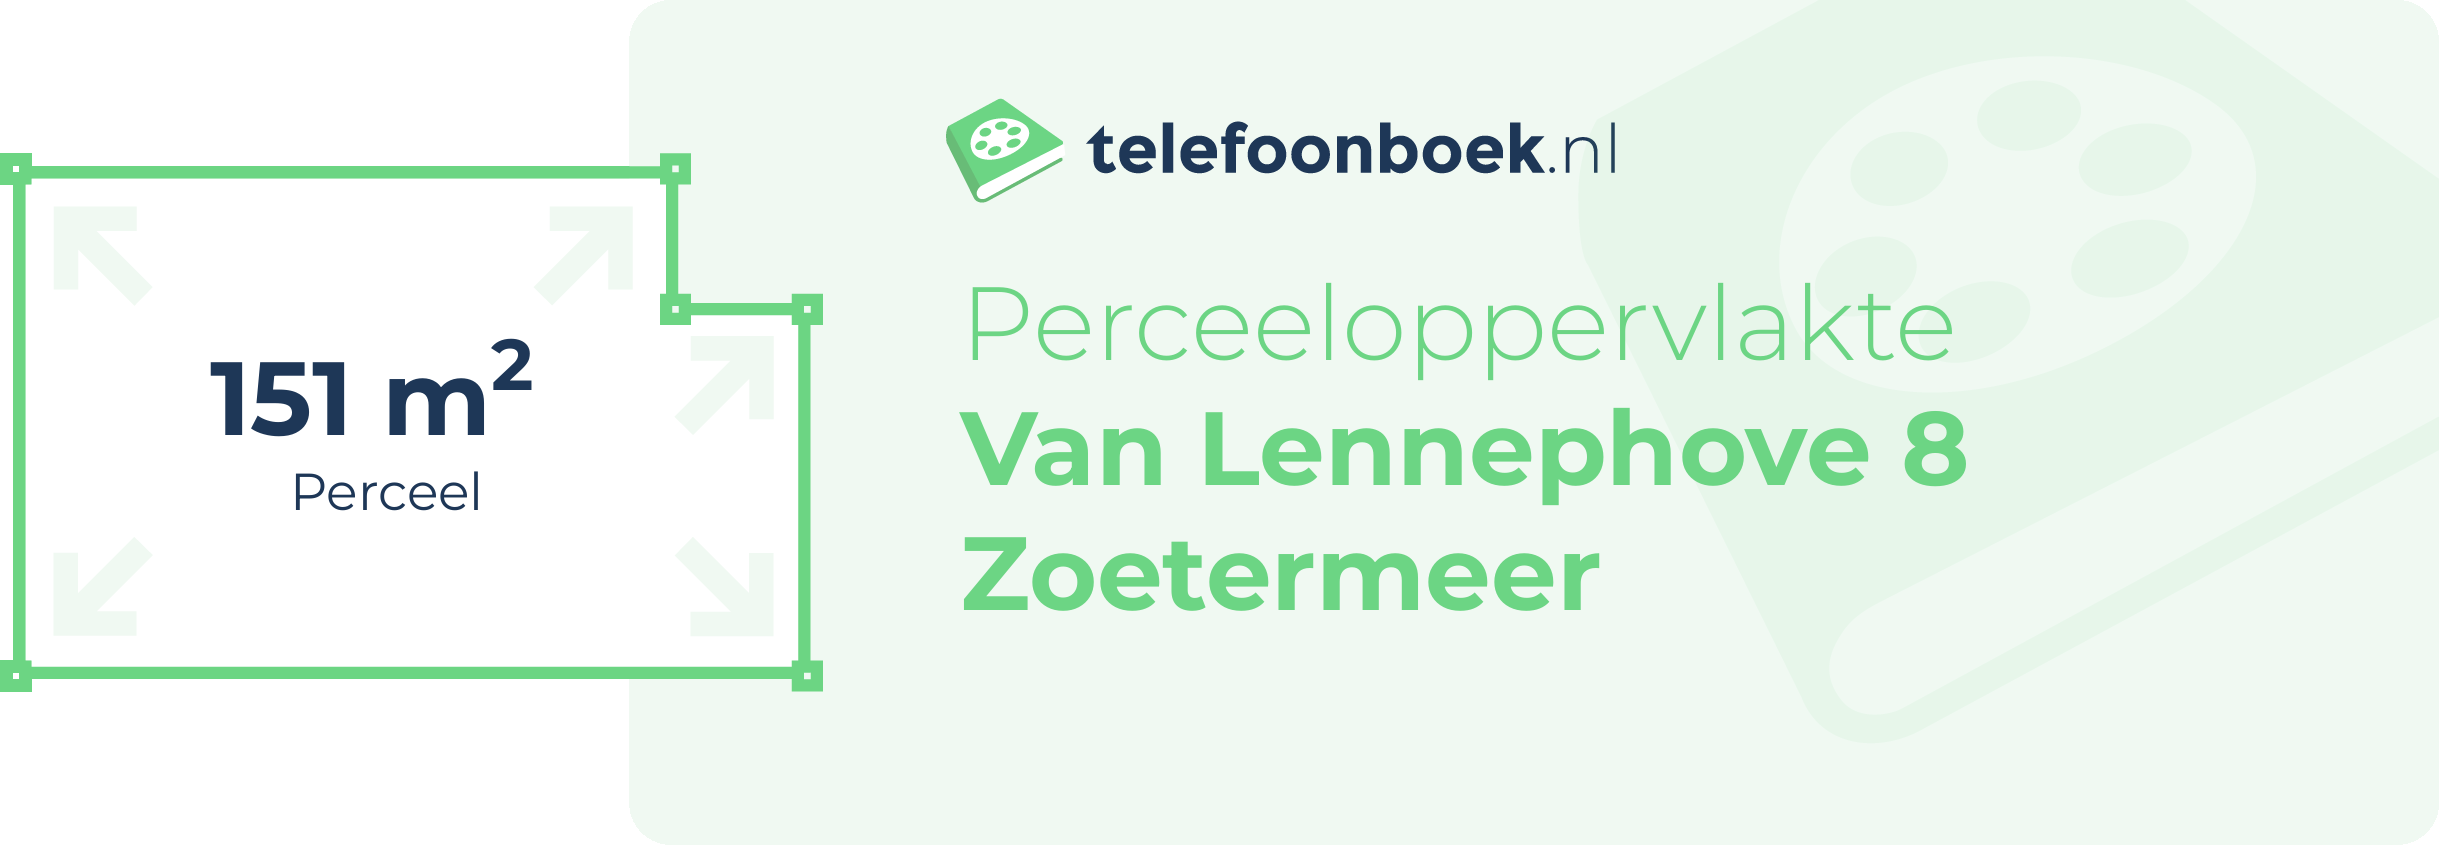 Perceeloppervlakte Van Lennephove 8 Zoetermeer